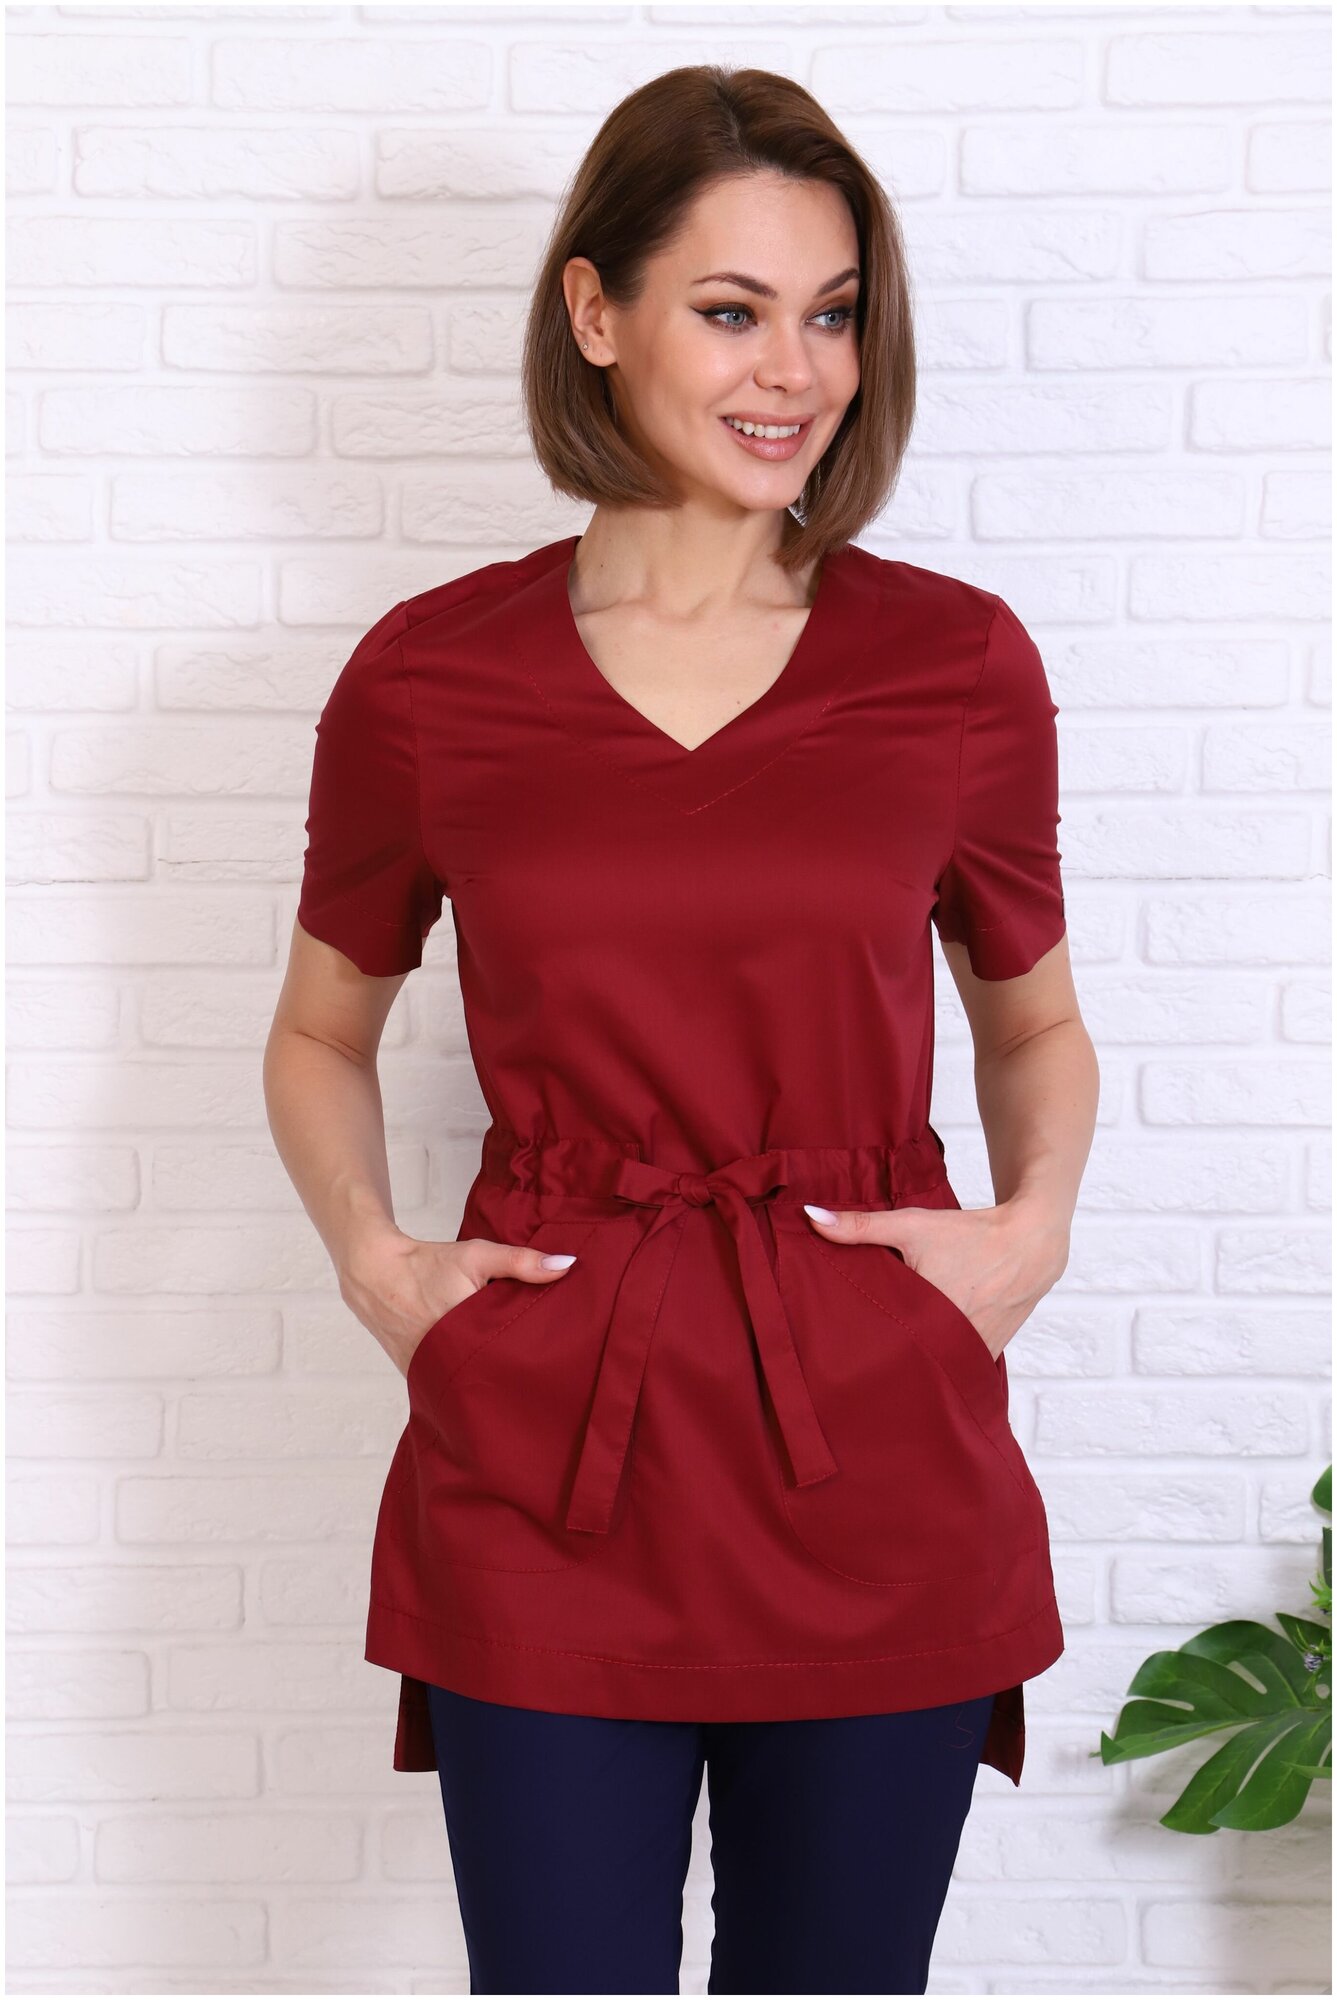 Туника/блузка медицинская женская Альба-С бордовая с поясом больших размеров. Куртка/рубашка рабочая удлиненная с разрезами стрейч. Спецодежда для женщин. Размер 54